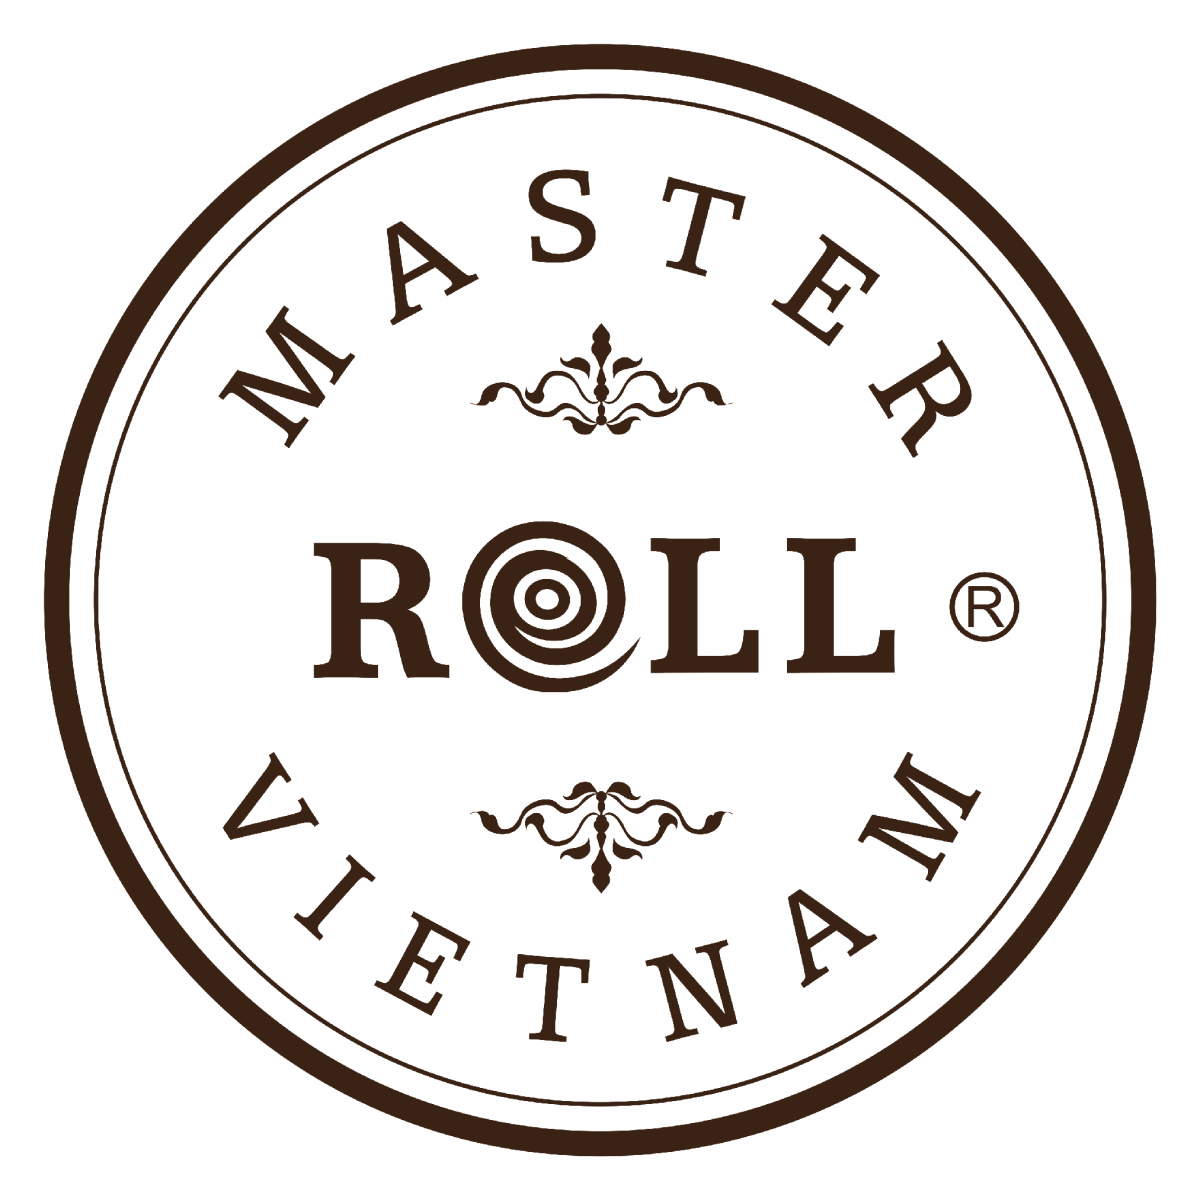 Master Roll Vietnam – South Yarra